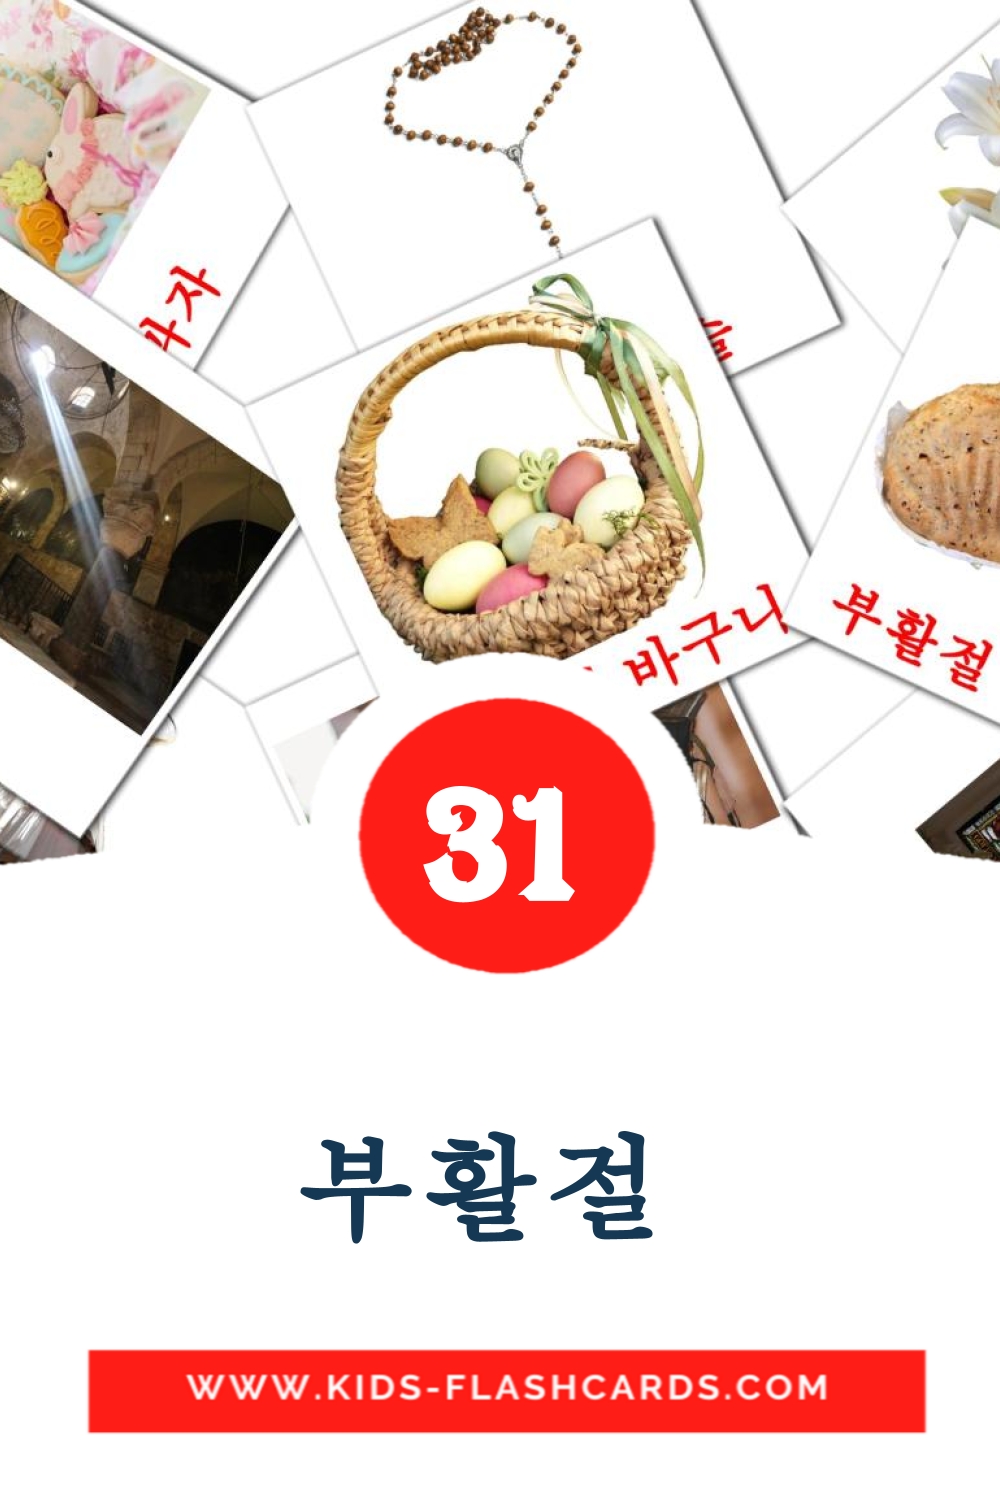 31 부활절  fotokaarten voor kleuters in het koreaanse